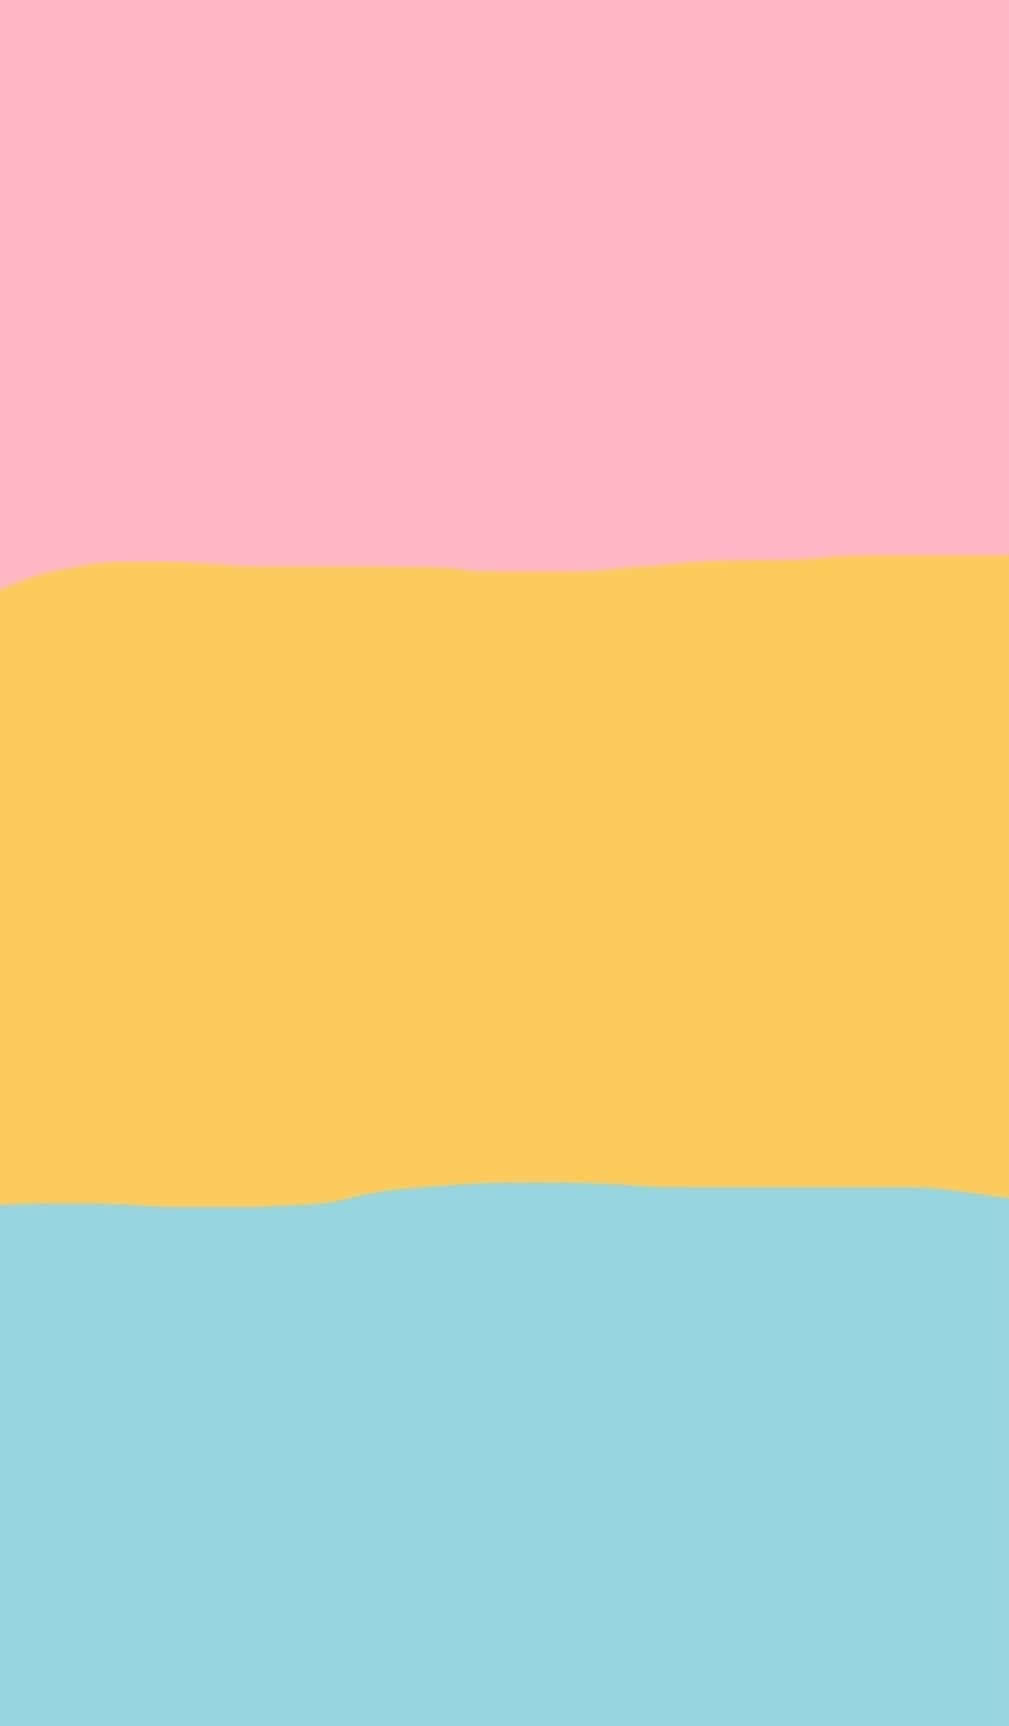 En pink, gul og blå flag med et regnbue i midten Wallpaper